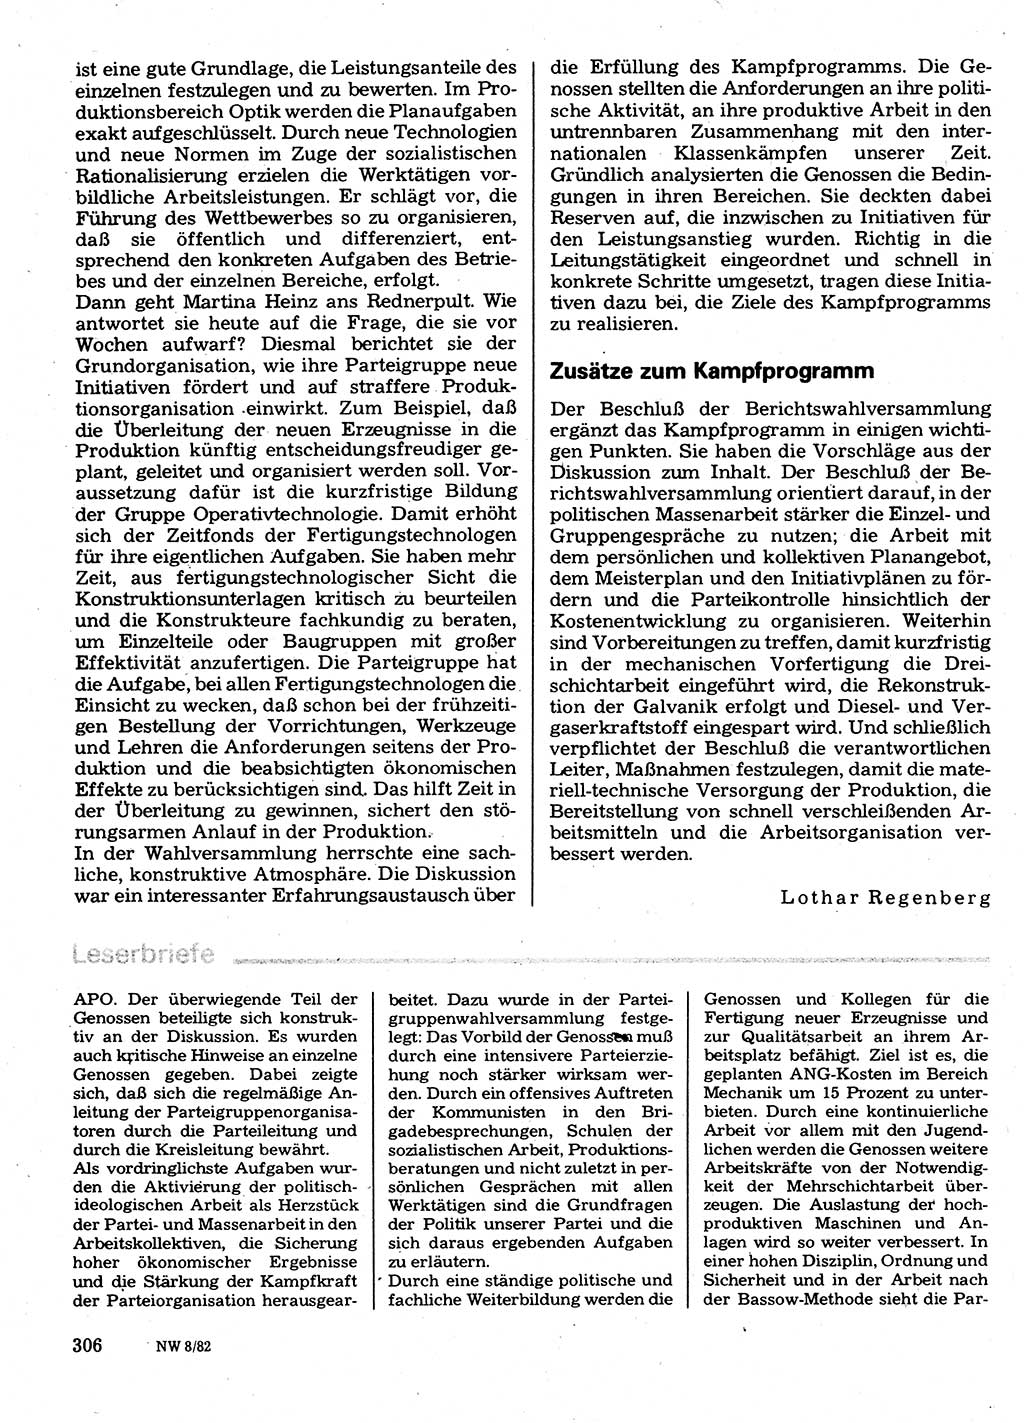 Neuer Weg (NW), Organ des Zentralkomitees (ZK) der SED (Sozialistische Einheitspartei Deutschlands) für Fragen des Parteilebens, 37. Jahrgang [Deutsche Demokratische Republik (DDR)] 1982, Seite 306 (NW ZK SED DDR 1982, S. 306)